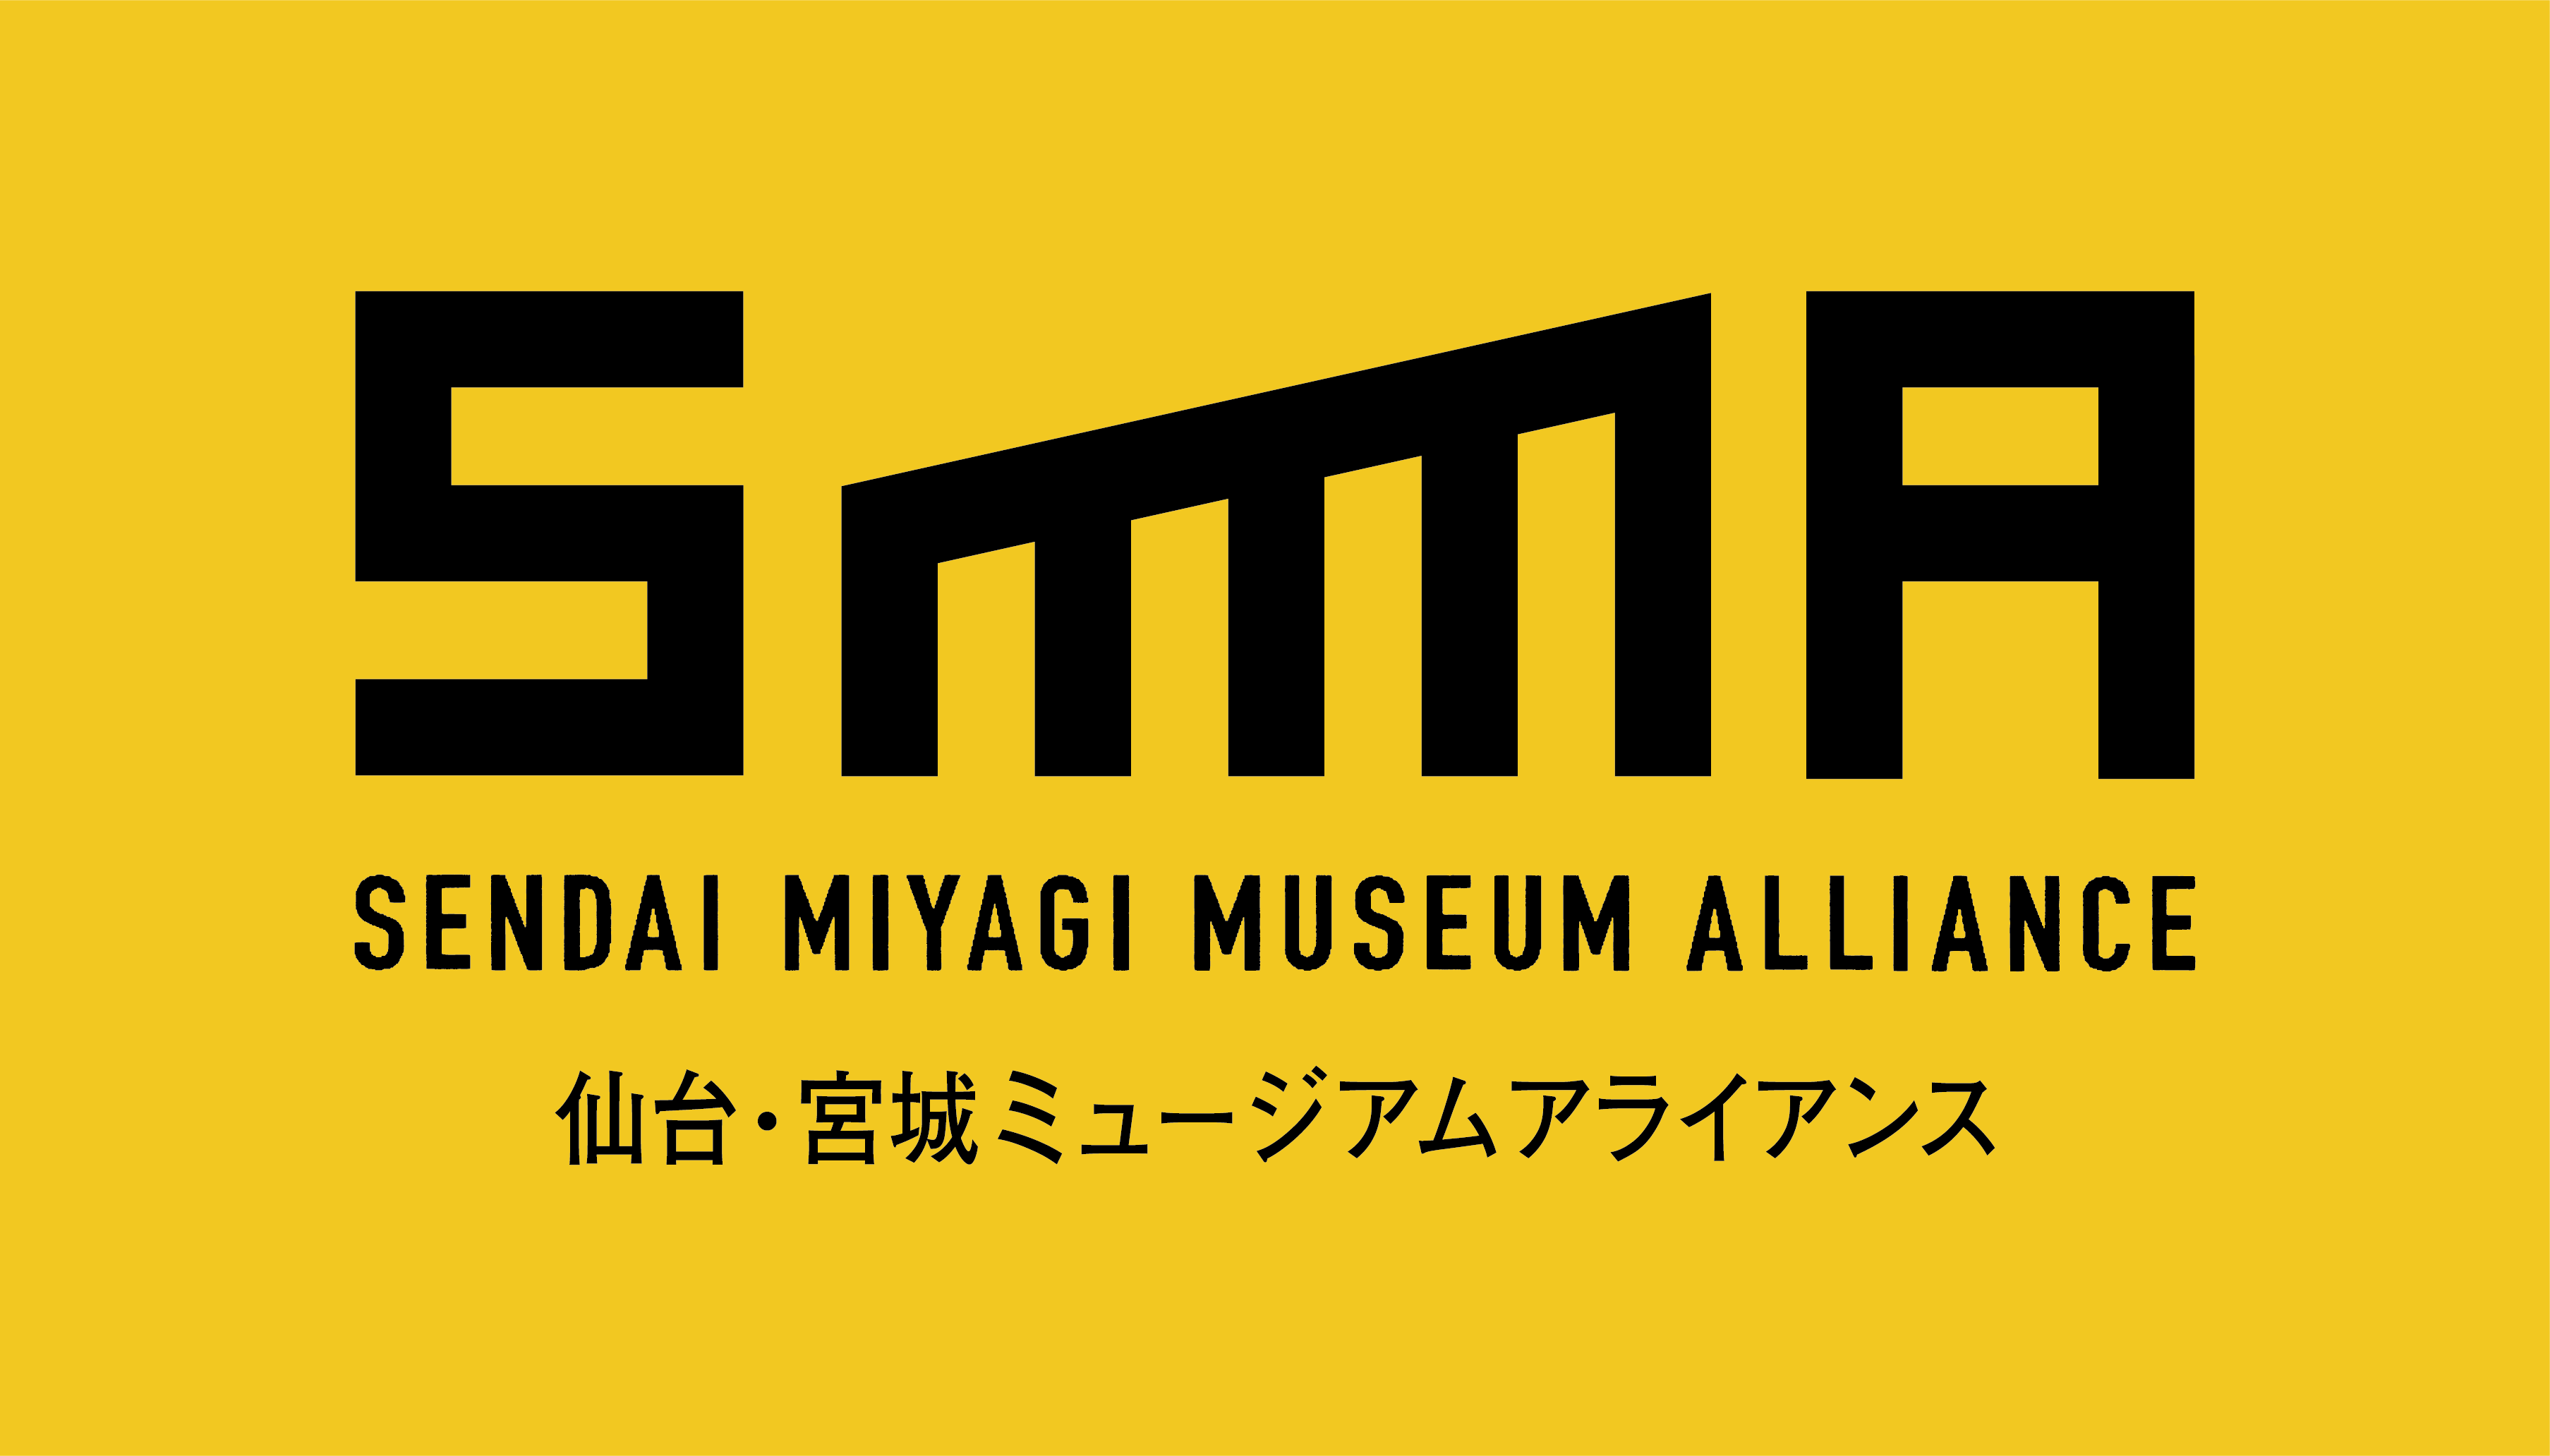 東北大学総合学術博物館は仙台・宮城ミュージアムアライアンスの加盟館です。